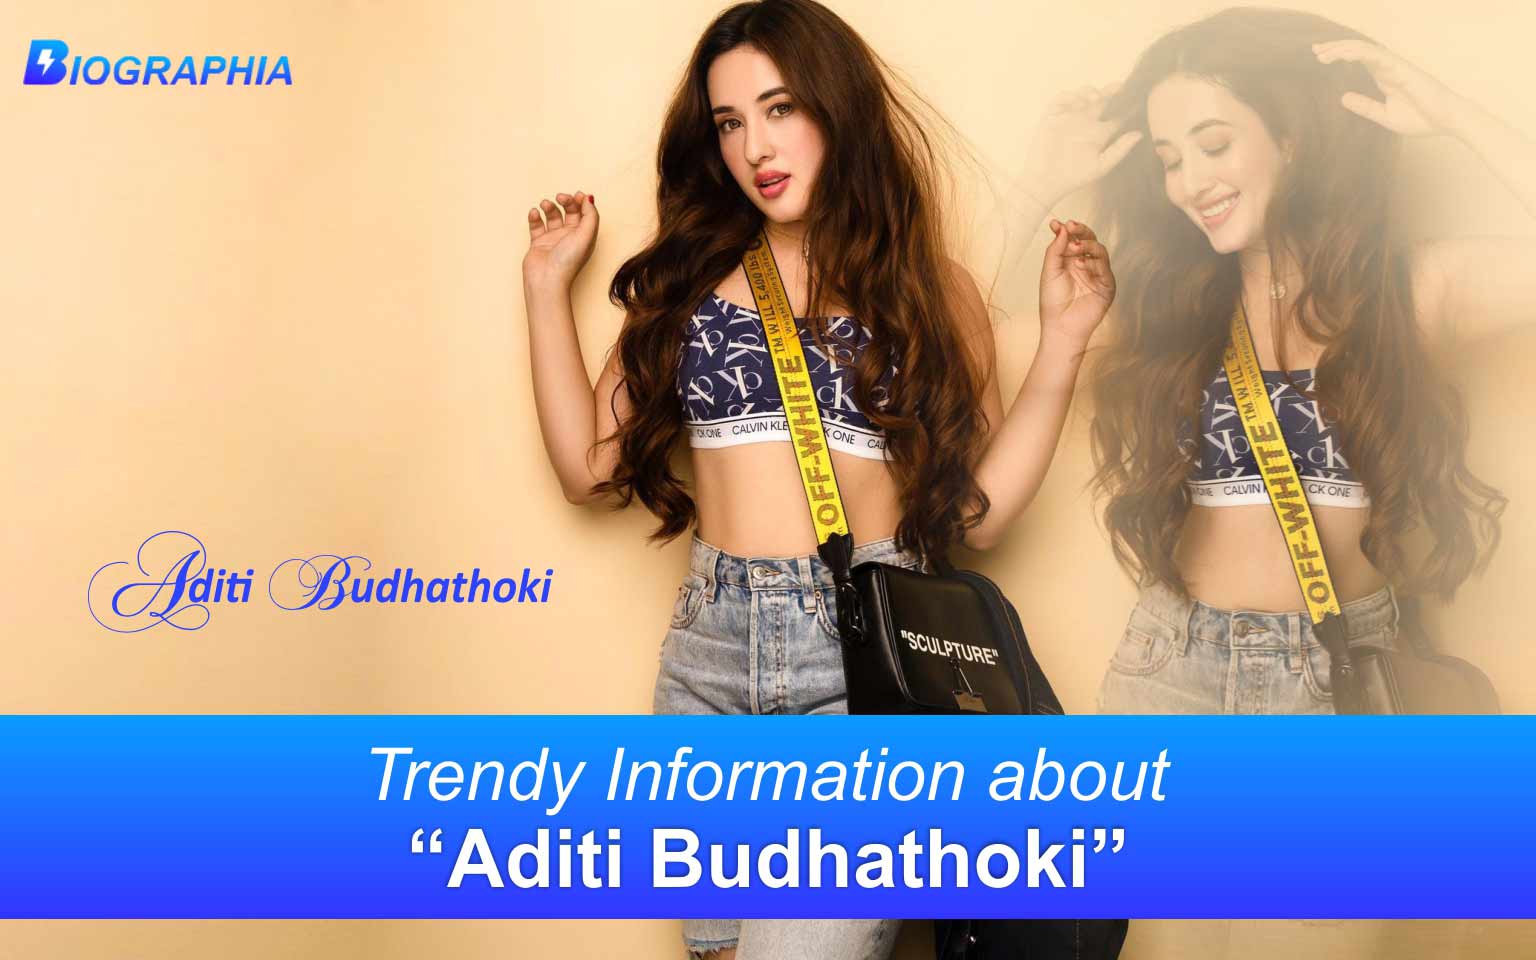 1536px x 960px - Aditi Budhathoki Age, Height, Biography, Wiki and Everything about Aditi  Budhathoki